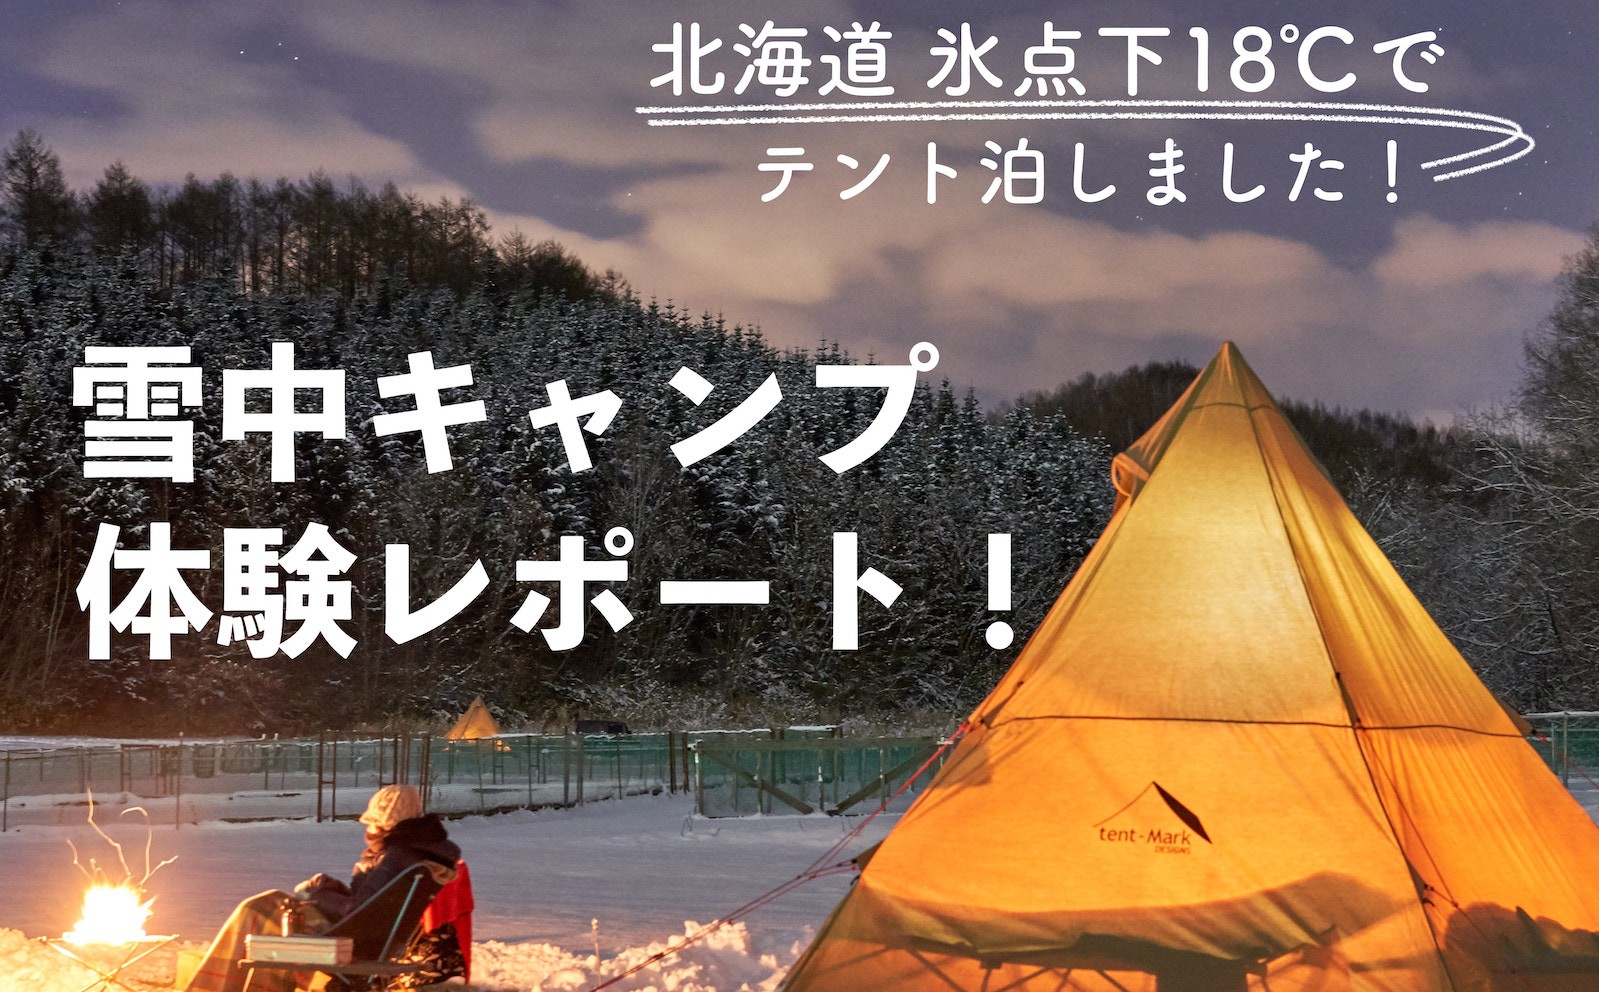 北海道の冬キャンプ 18 でテント泊は本当に楽しい にお答えします Possibility Laboポジラボ 北海道キャンプブログ